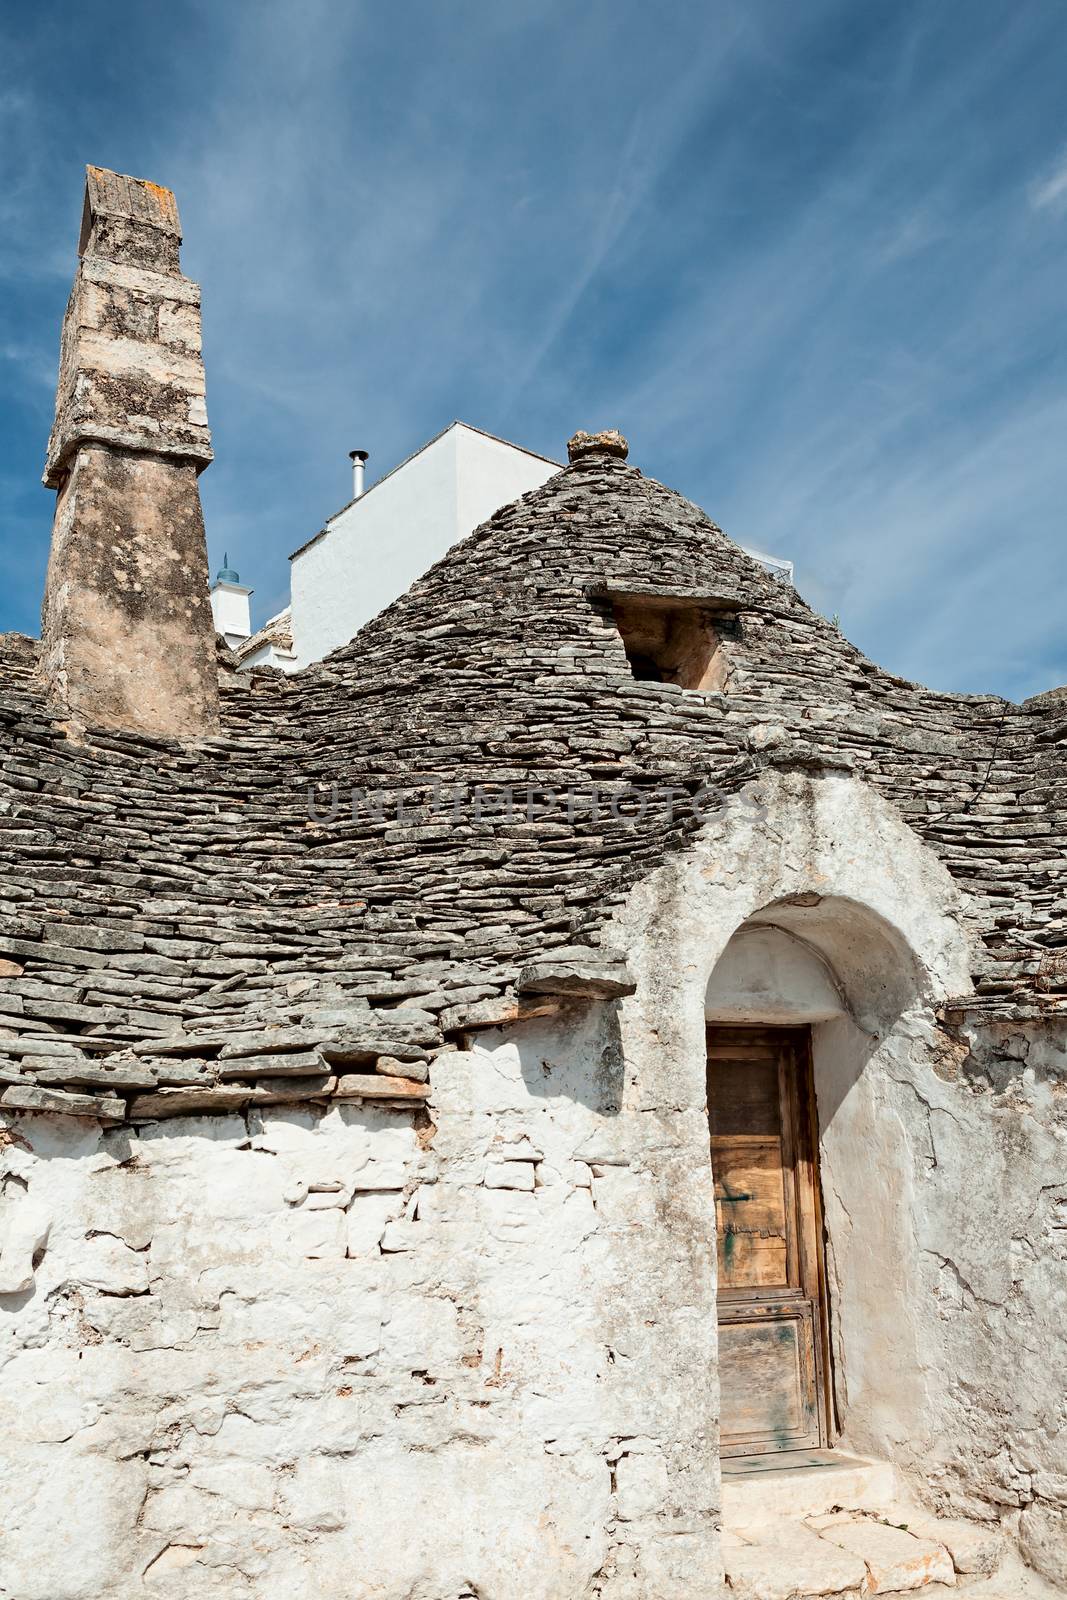 Old Trullo house in Alberobello, Puglia, Italy by LuigiMorbidelli